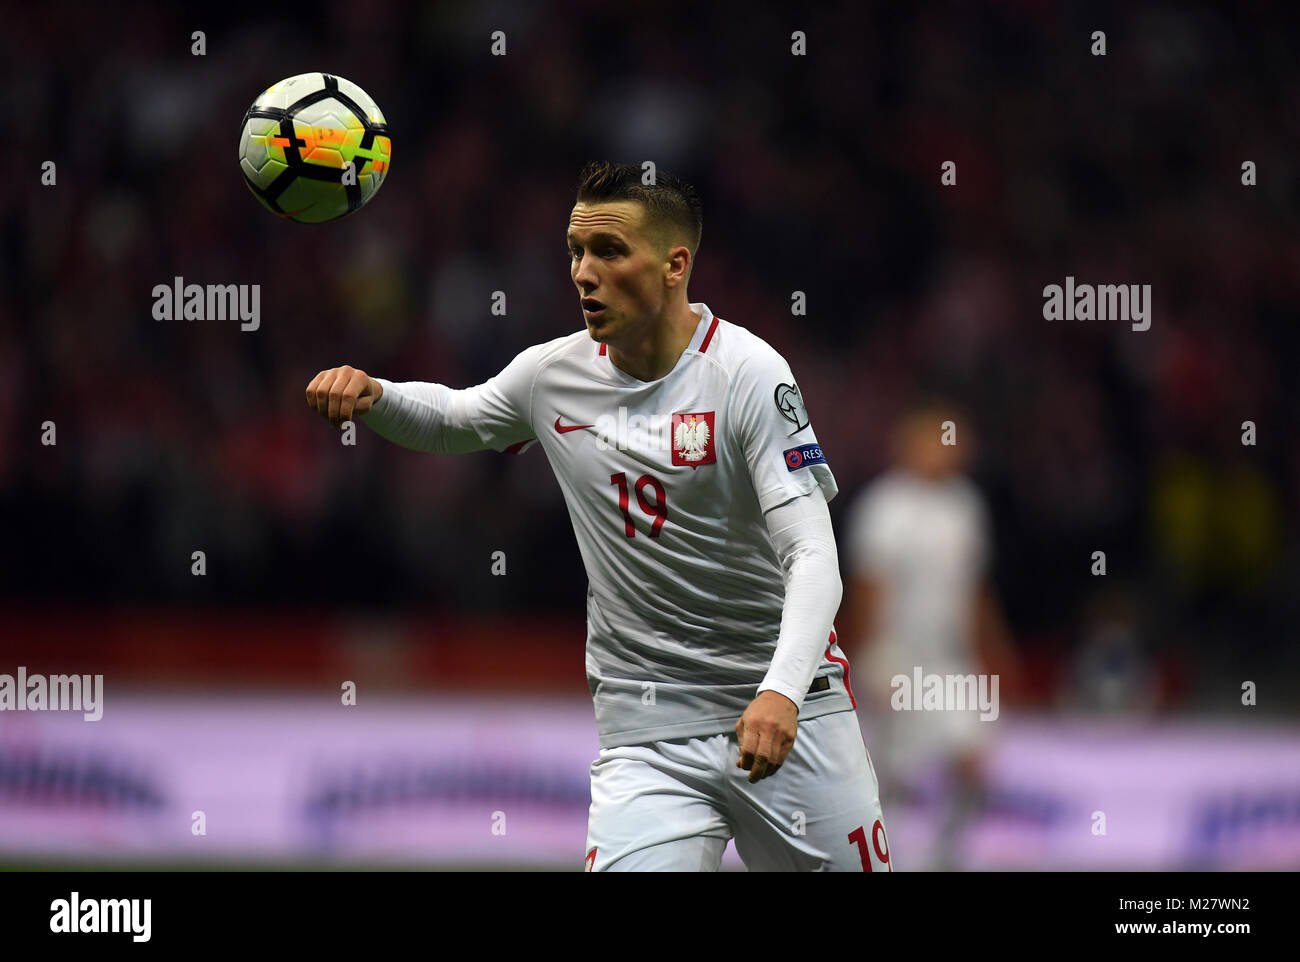 8 Oktober, 2017 - Warschau, Polen: Fußball WM 2018 Qualifikation Rusia Polen - Montenegro o/p Piotr Zielinski (Polen) Stockfoto